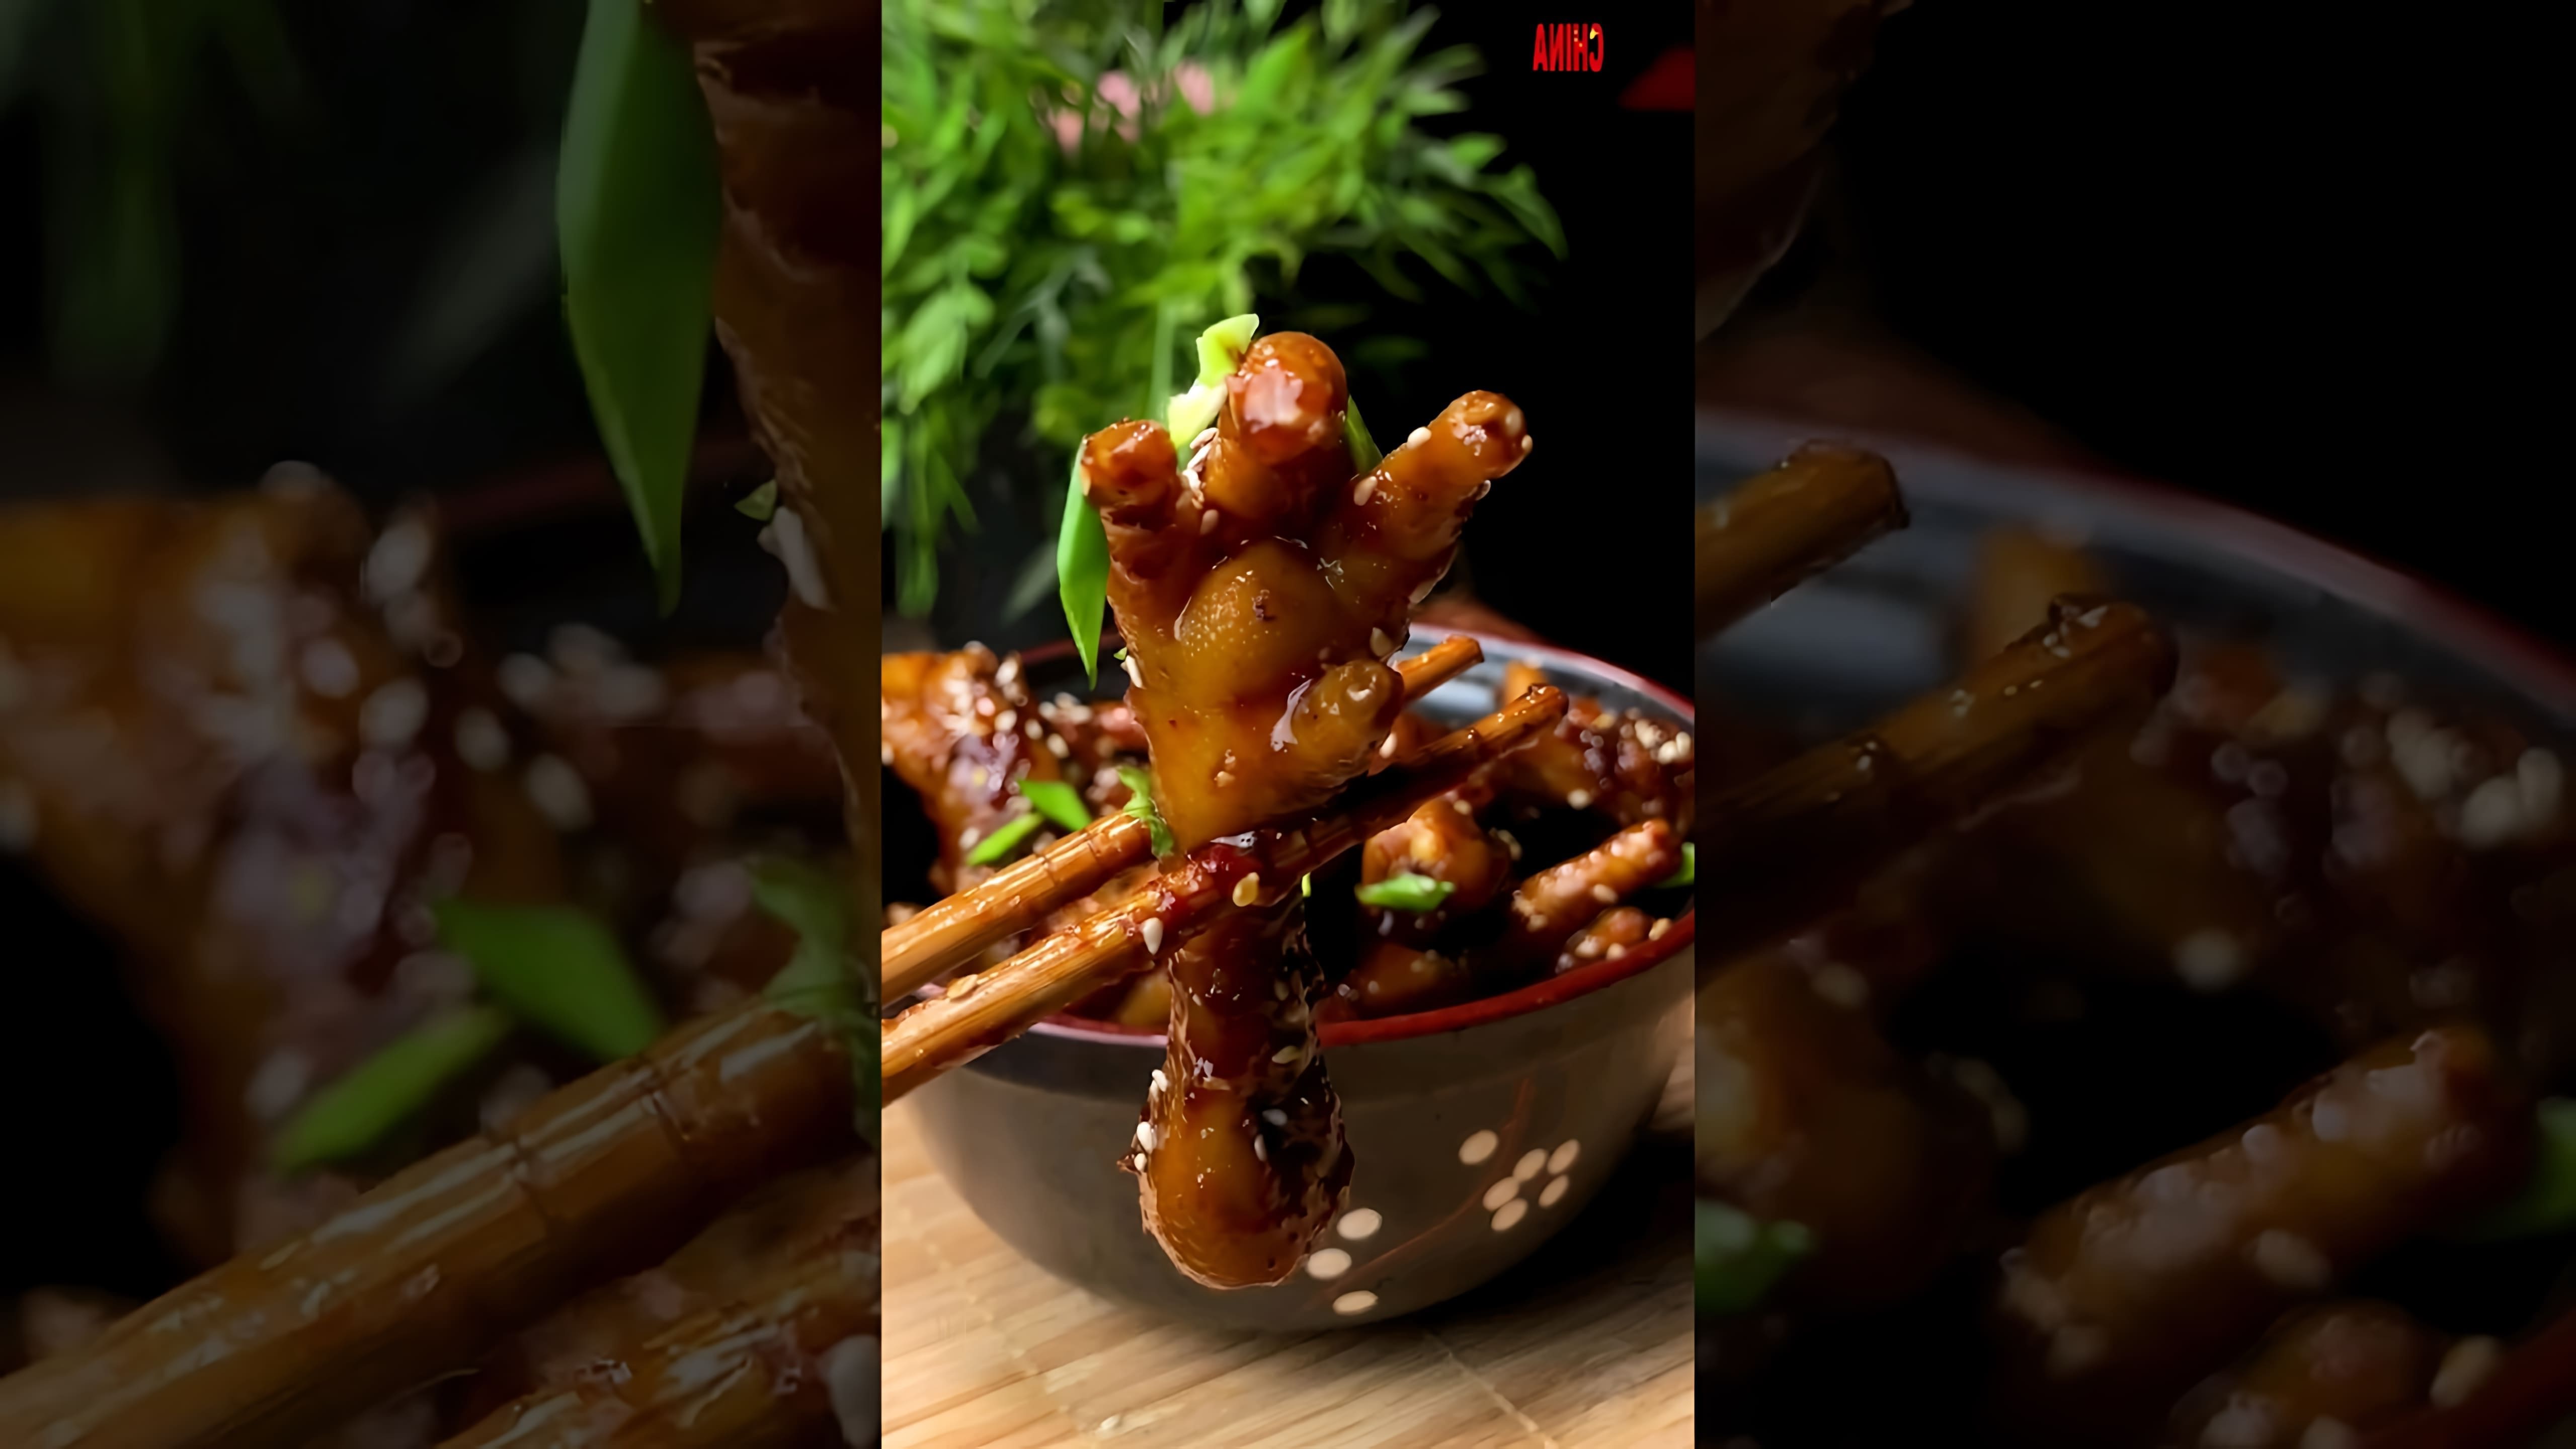 В этом видео демонстрируется процесс приготовления куриных лапок по китайскому рецепту